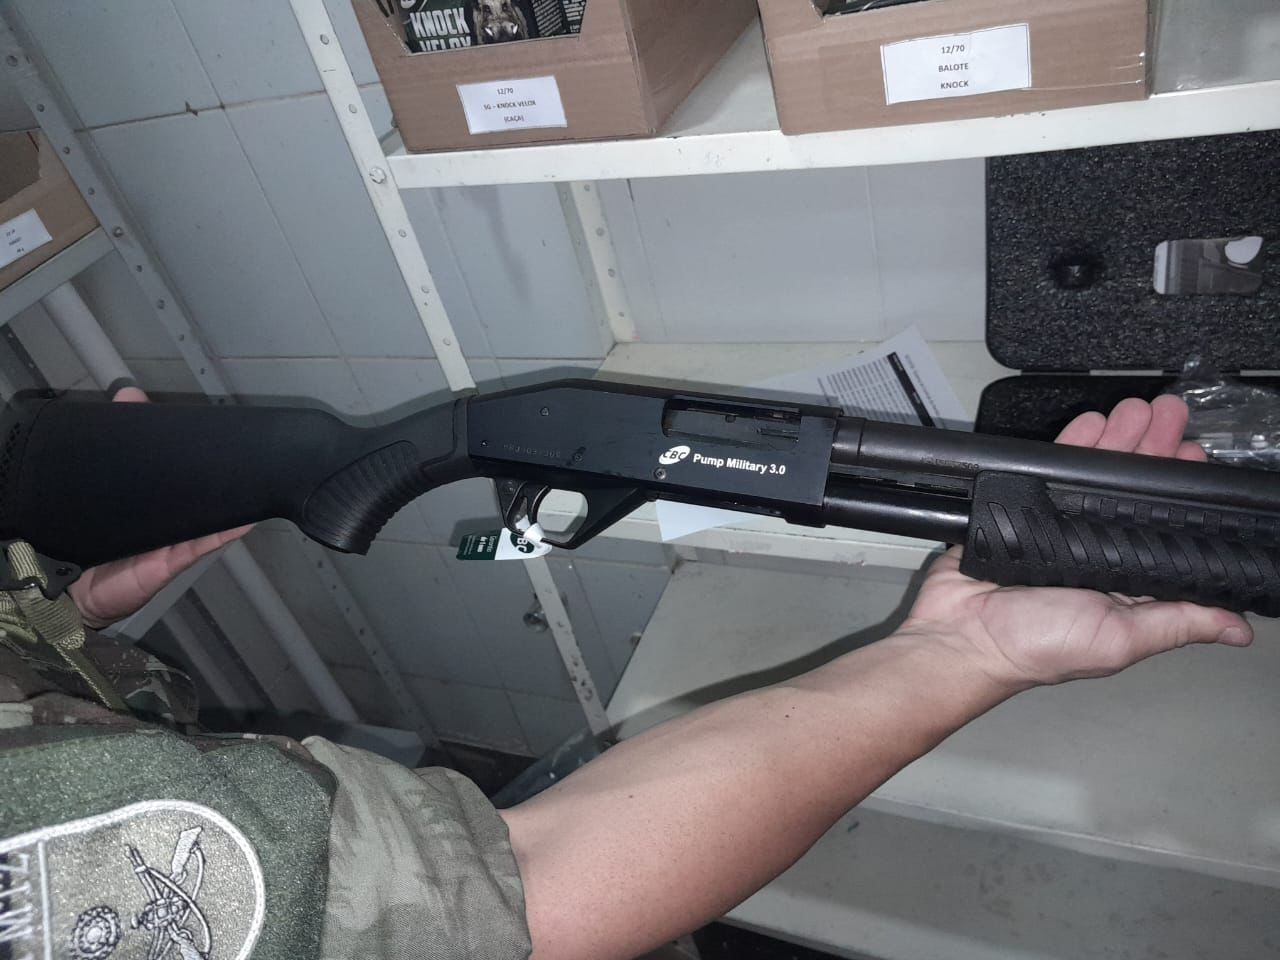 Operação no DF apreende armas de fogo e munições irregulares avaliadas em R$ 7,5 milhões